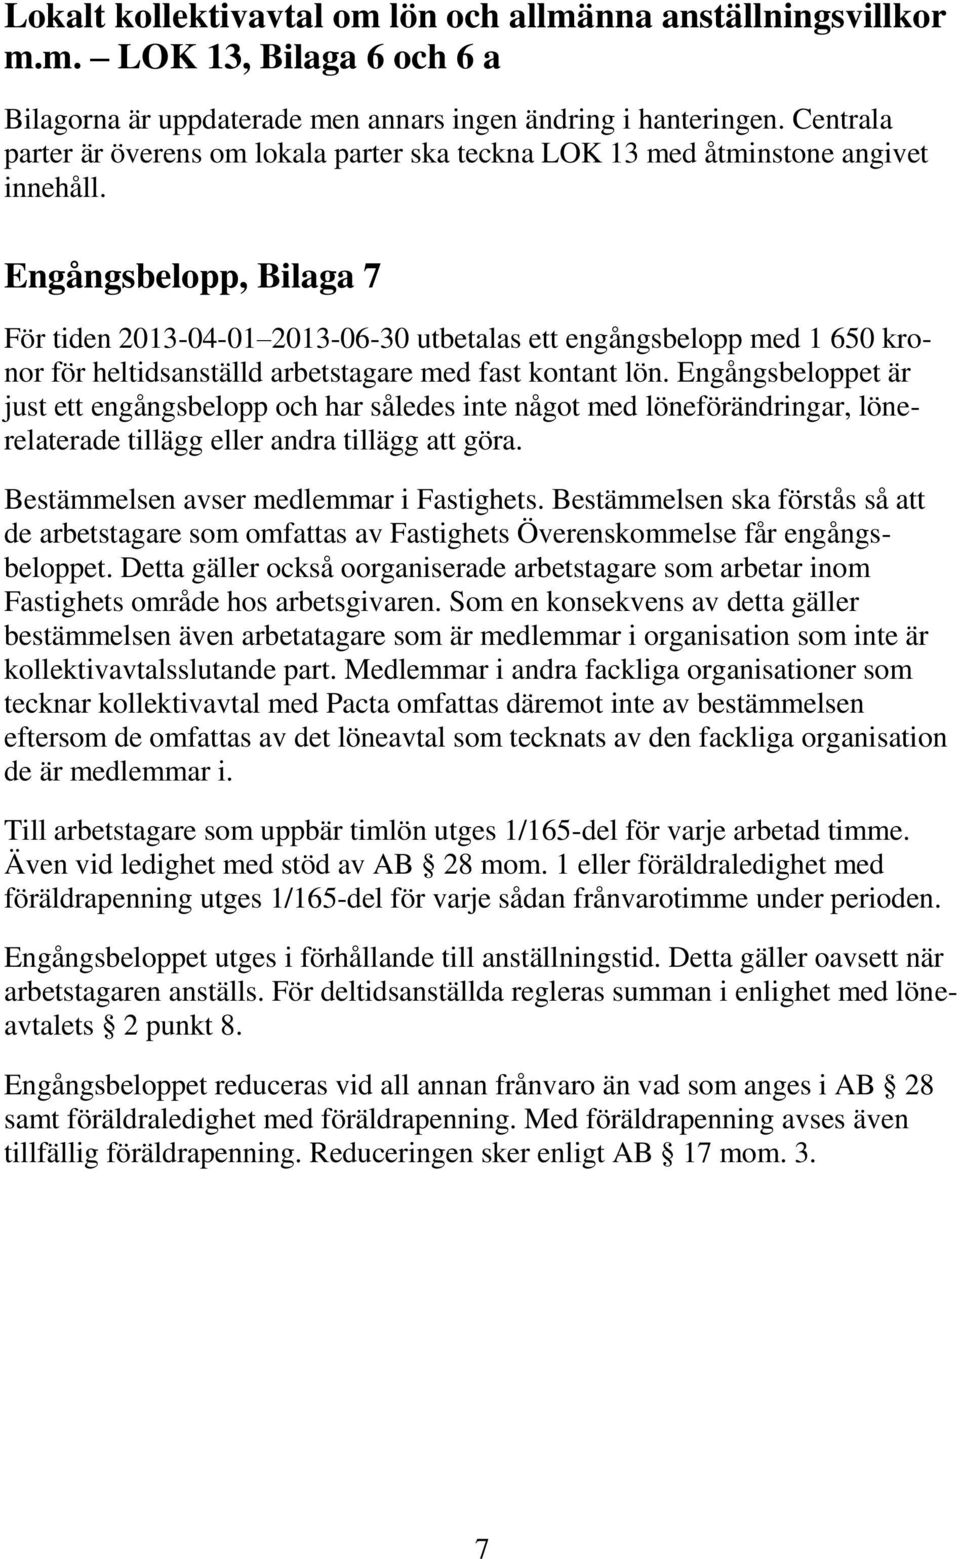 Engångsbelopp, Bilaga 7 För tiden 2013-04-01 2013-06-30 utbetalas ett engångsbelopp med 1 650 kronor för heltidsanställd arbetstagare med fast kontant lön.